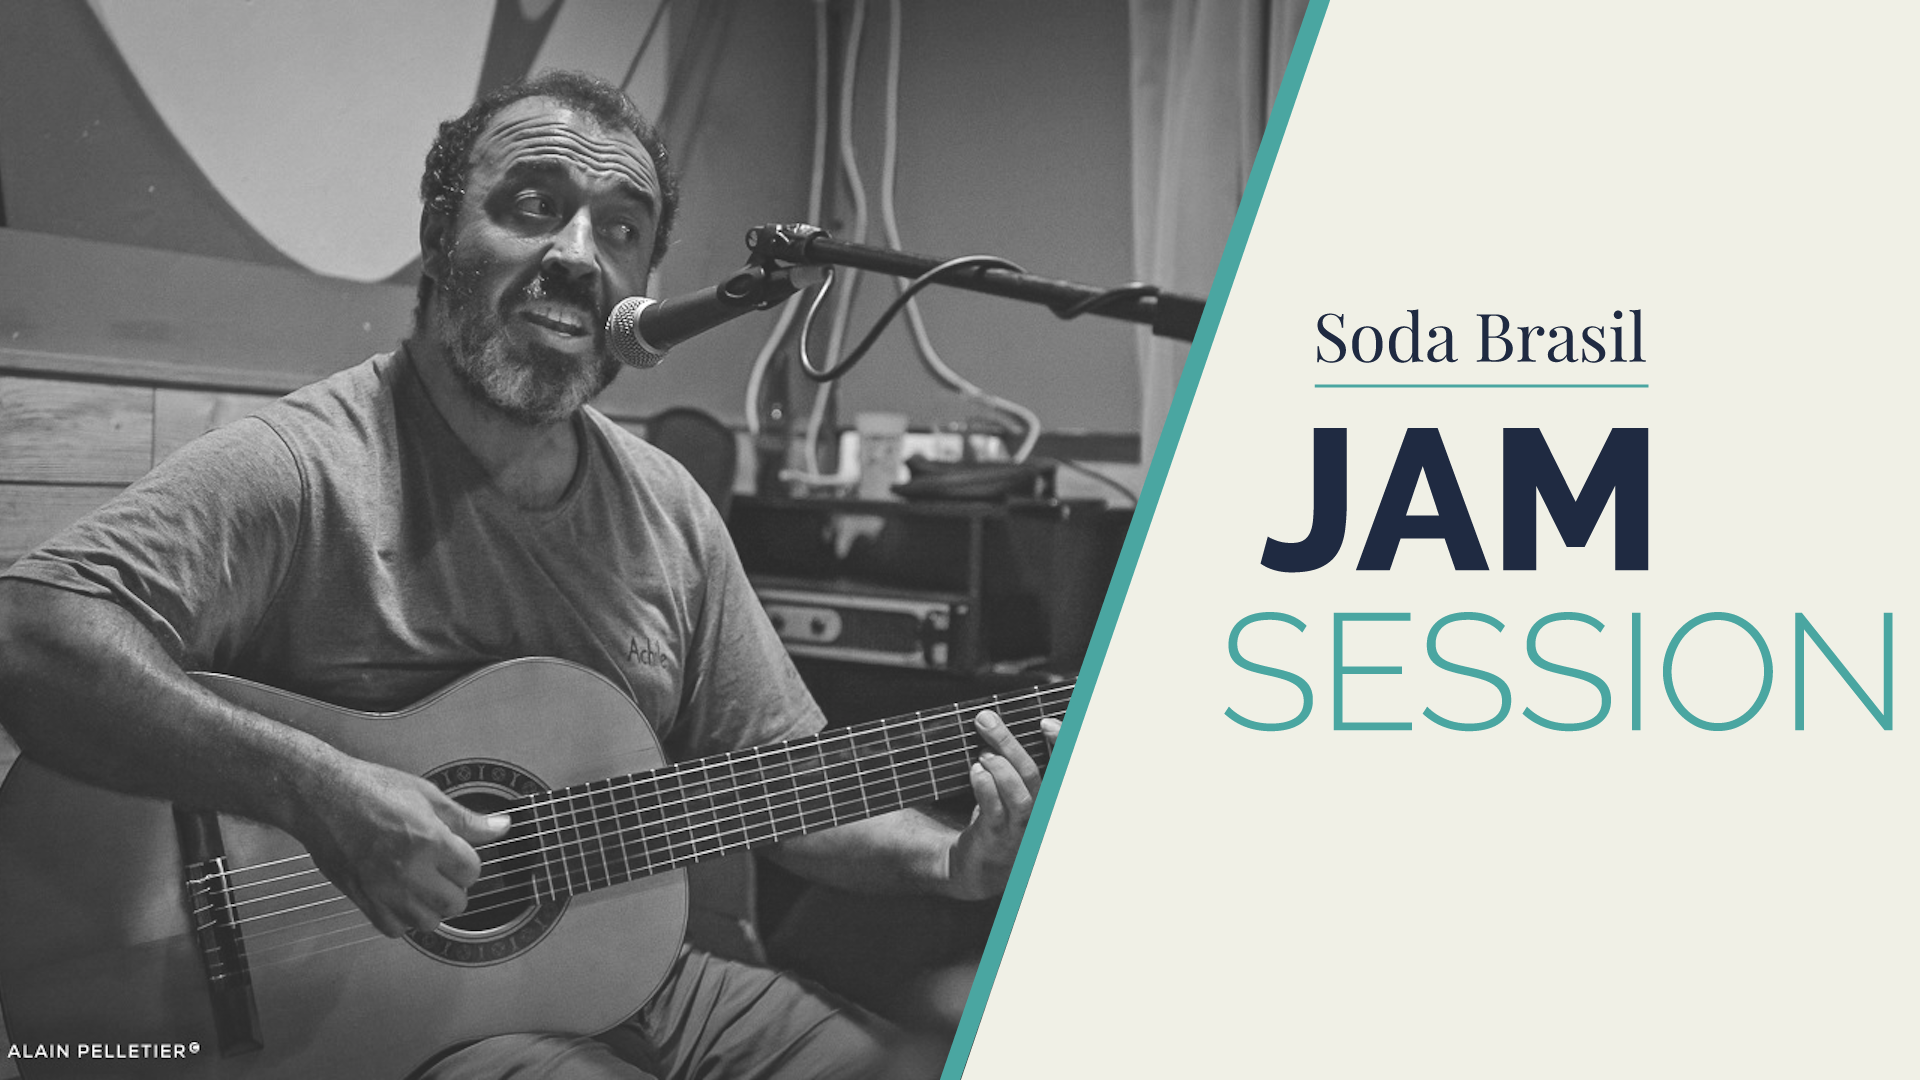 Soda Brazil Jam Session (+ Gaston Pose)